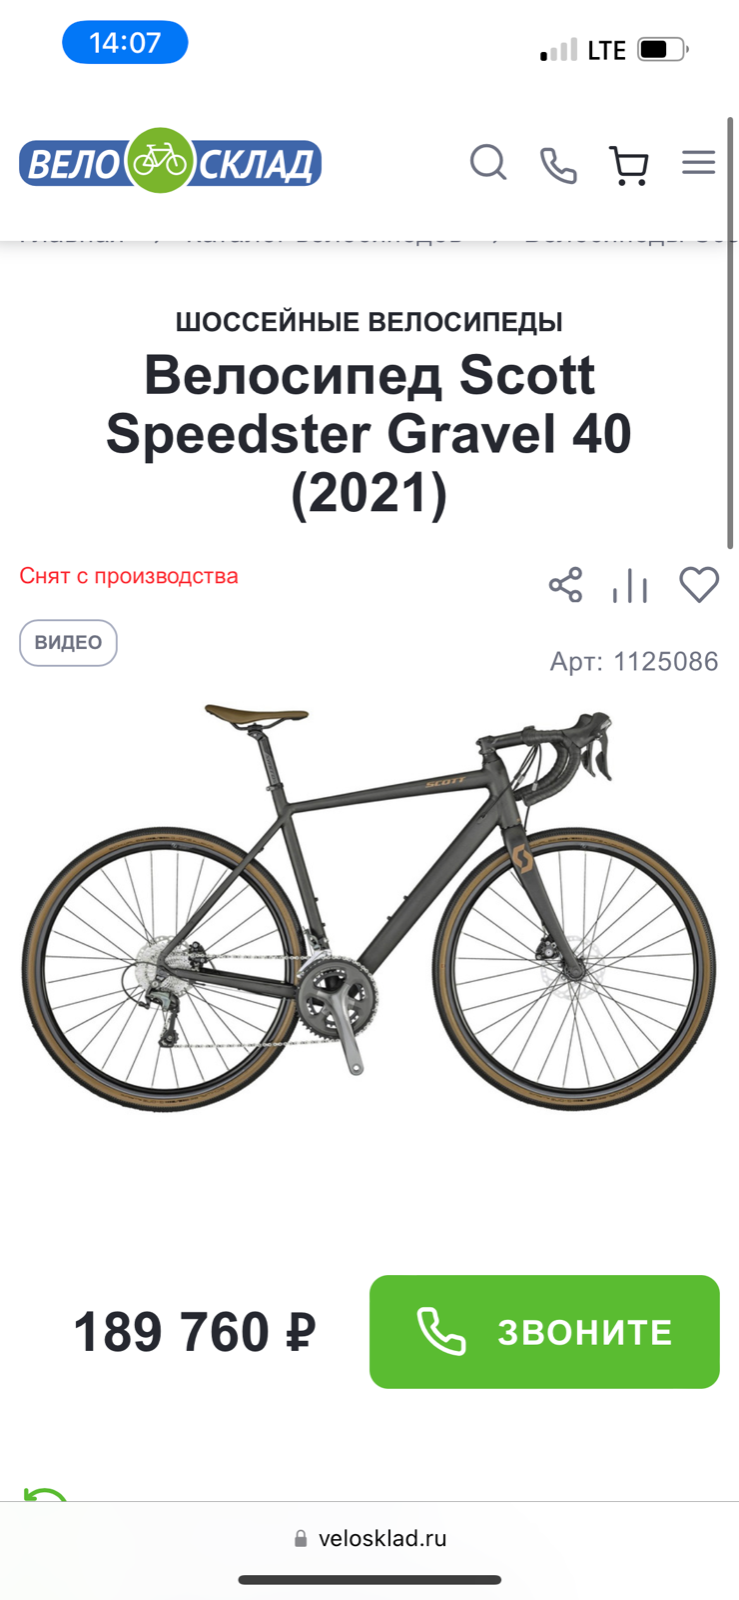 Scott speedster gravel 40